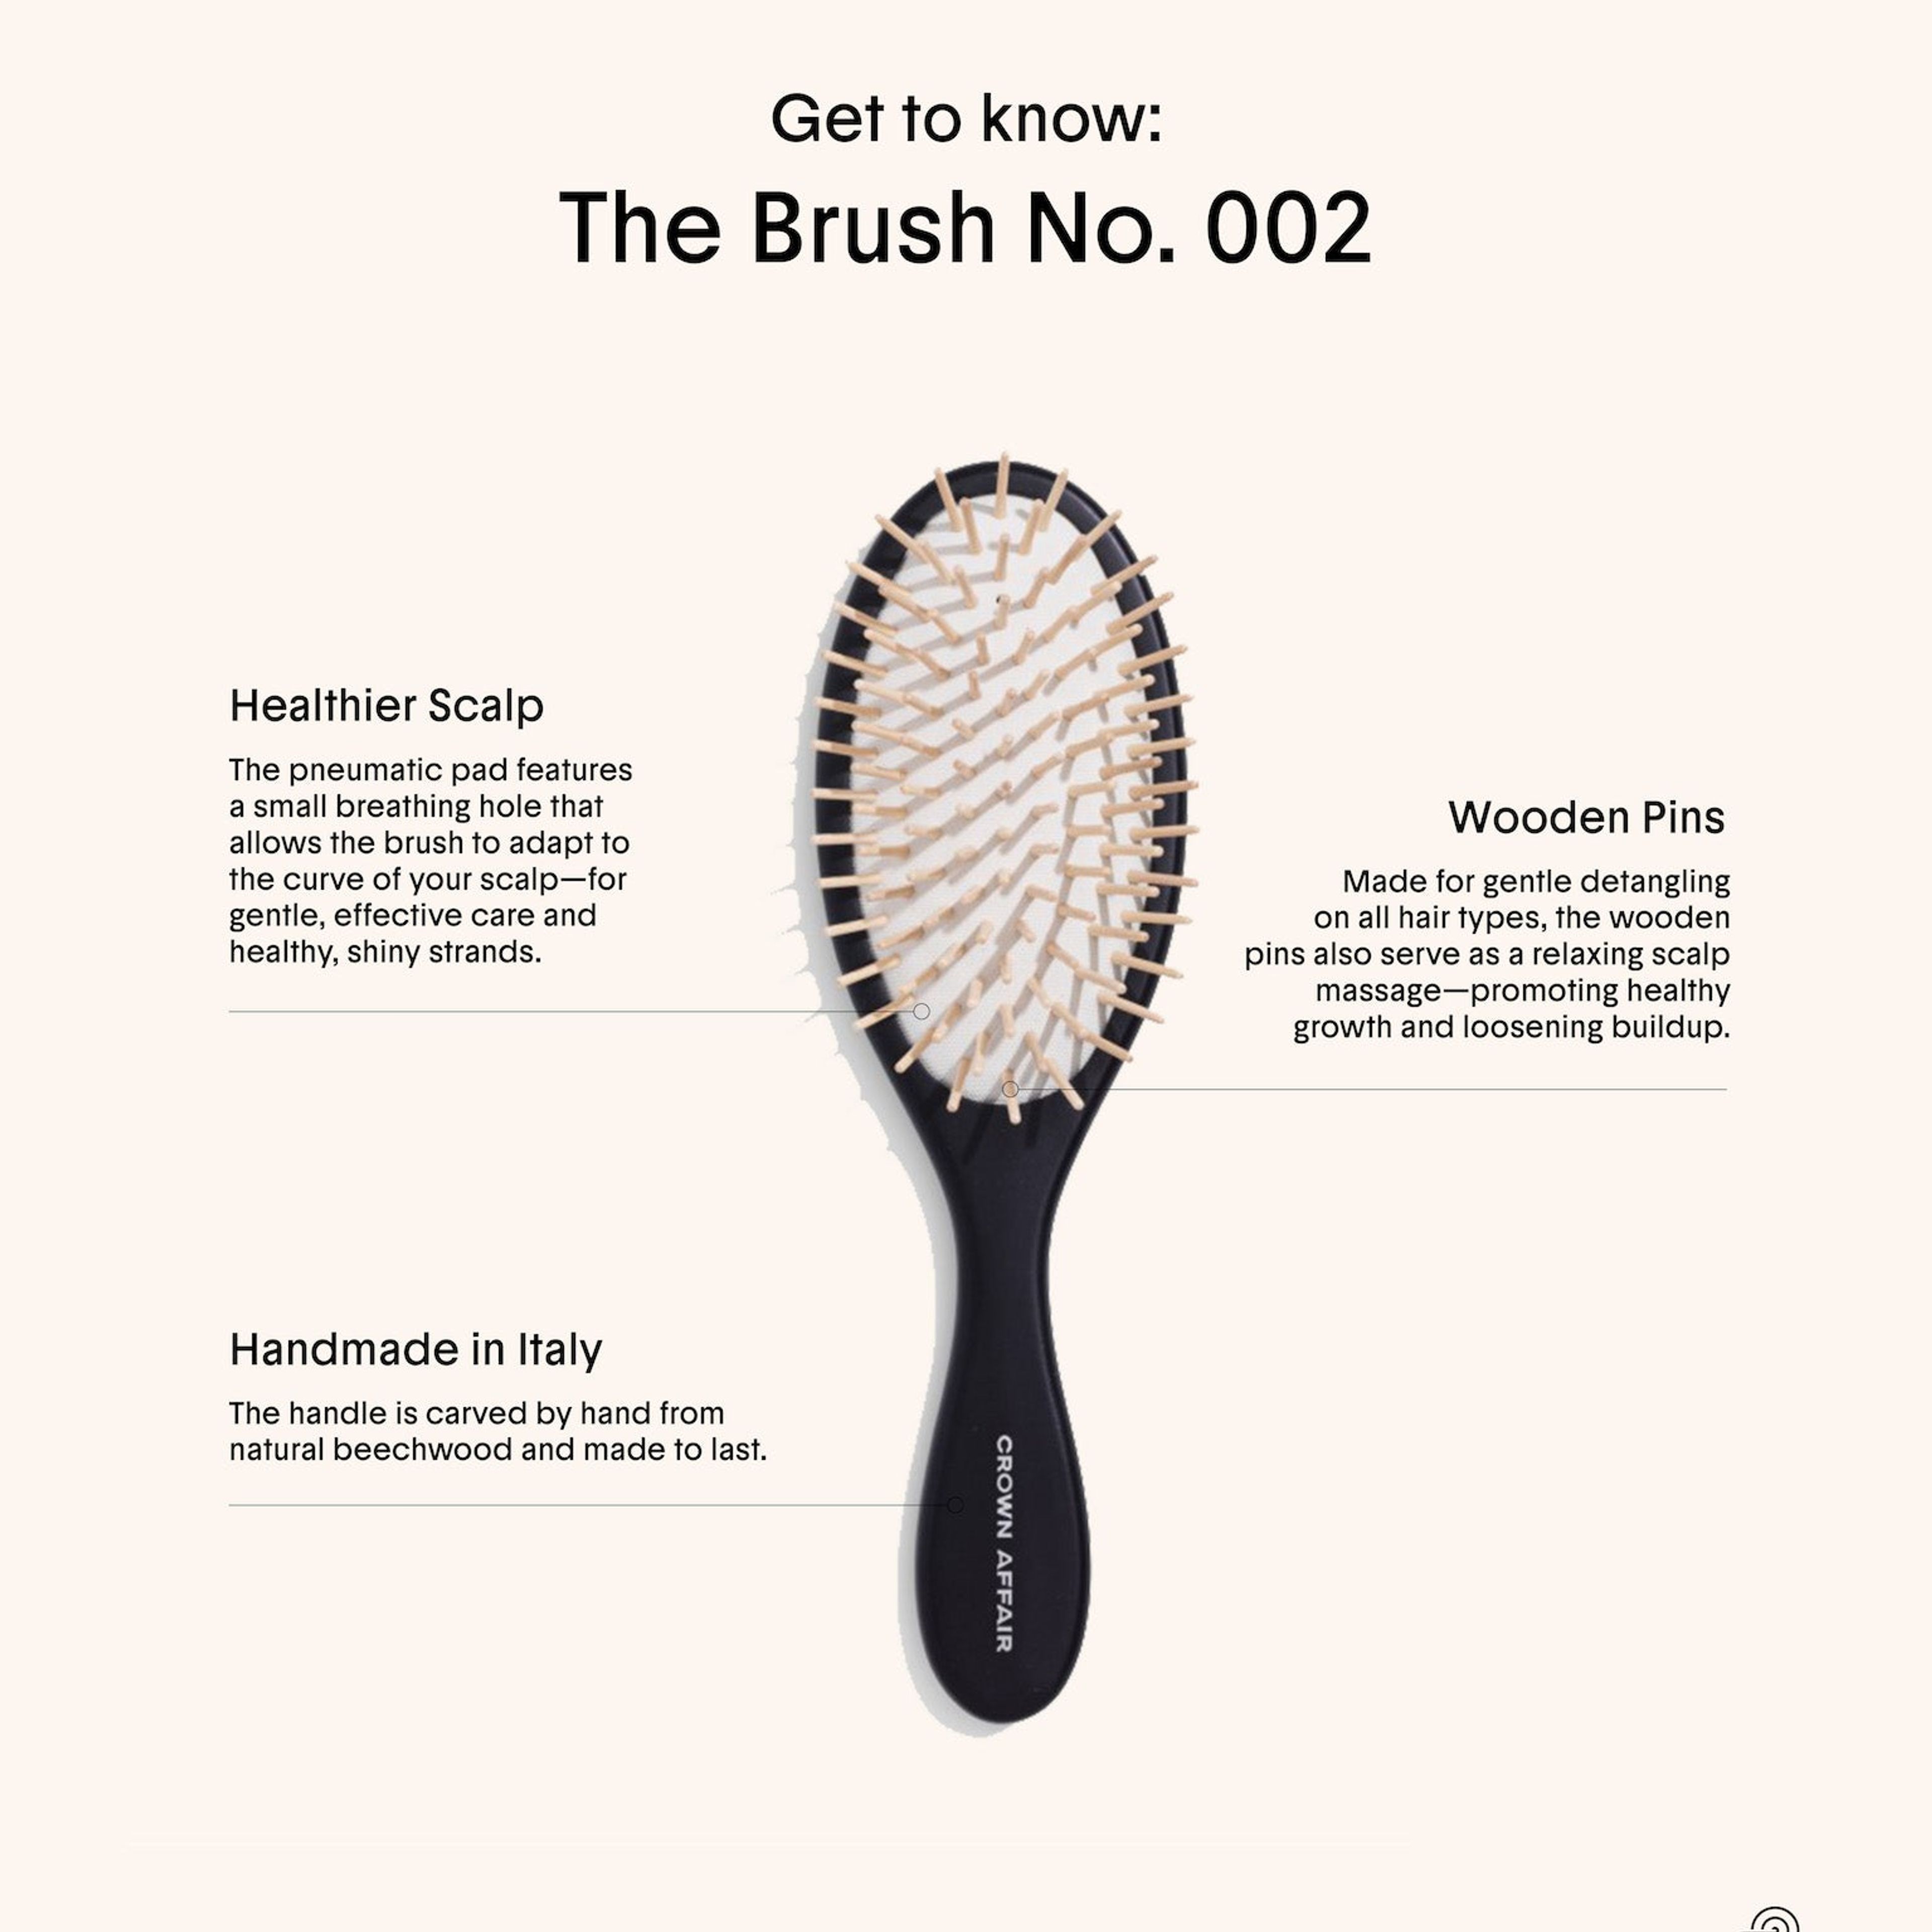 The Brush No. 002